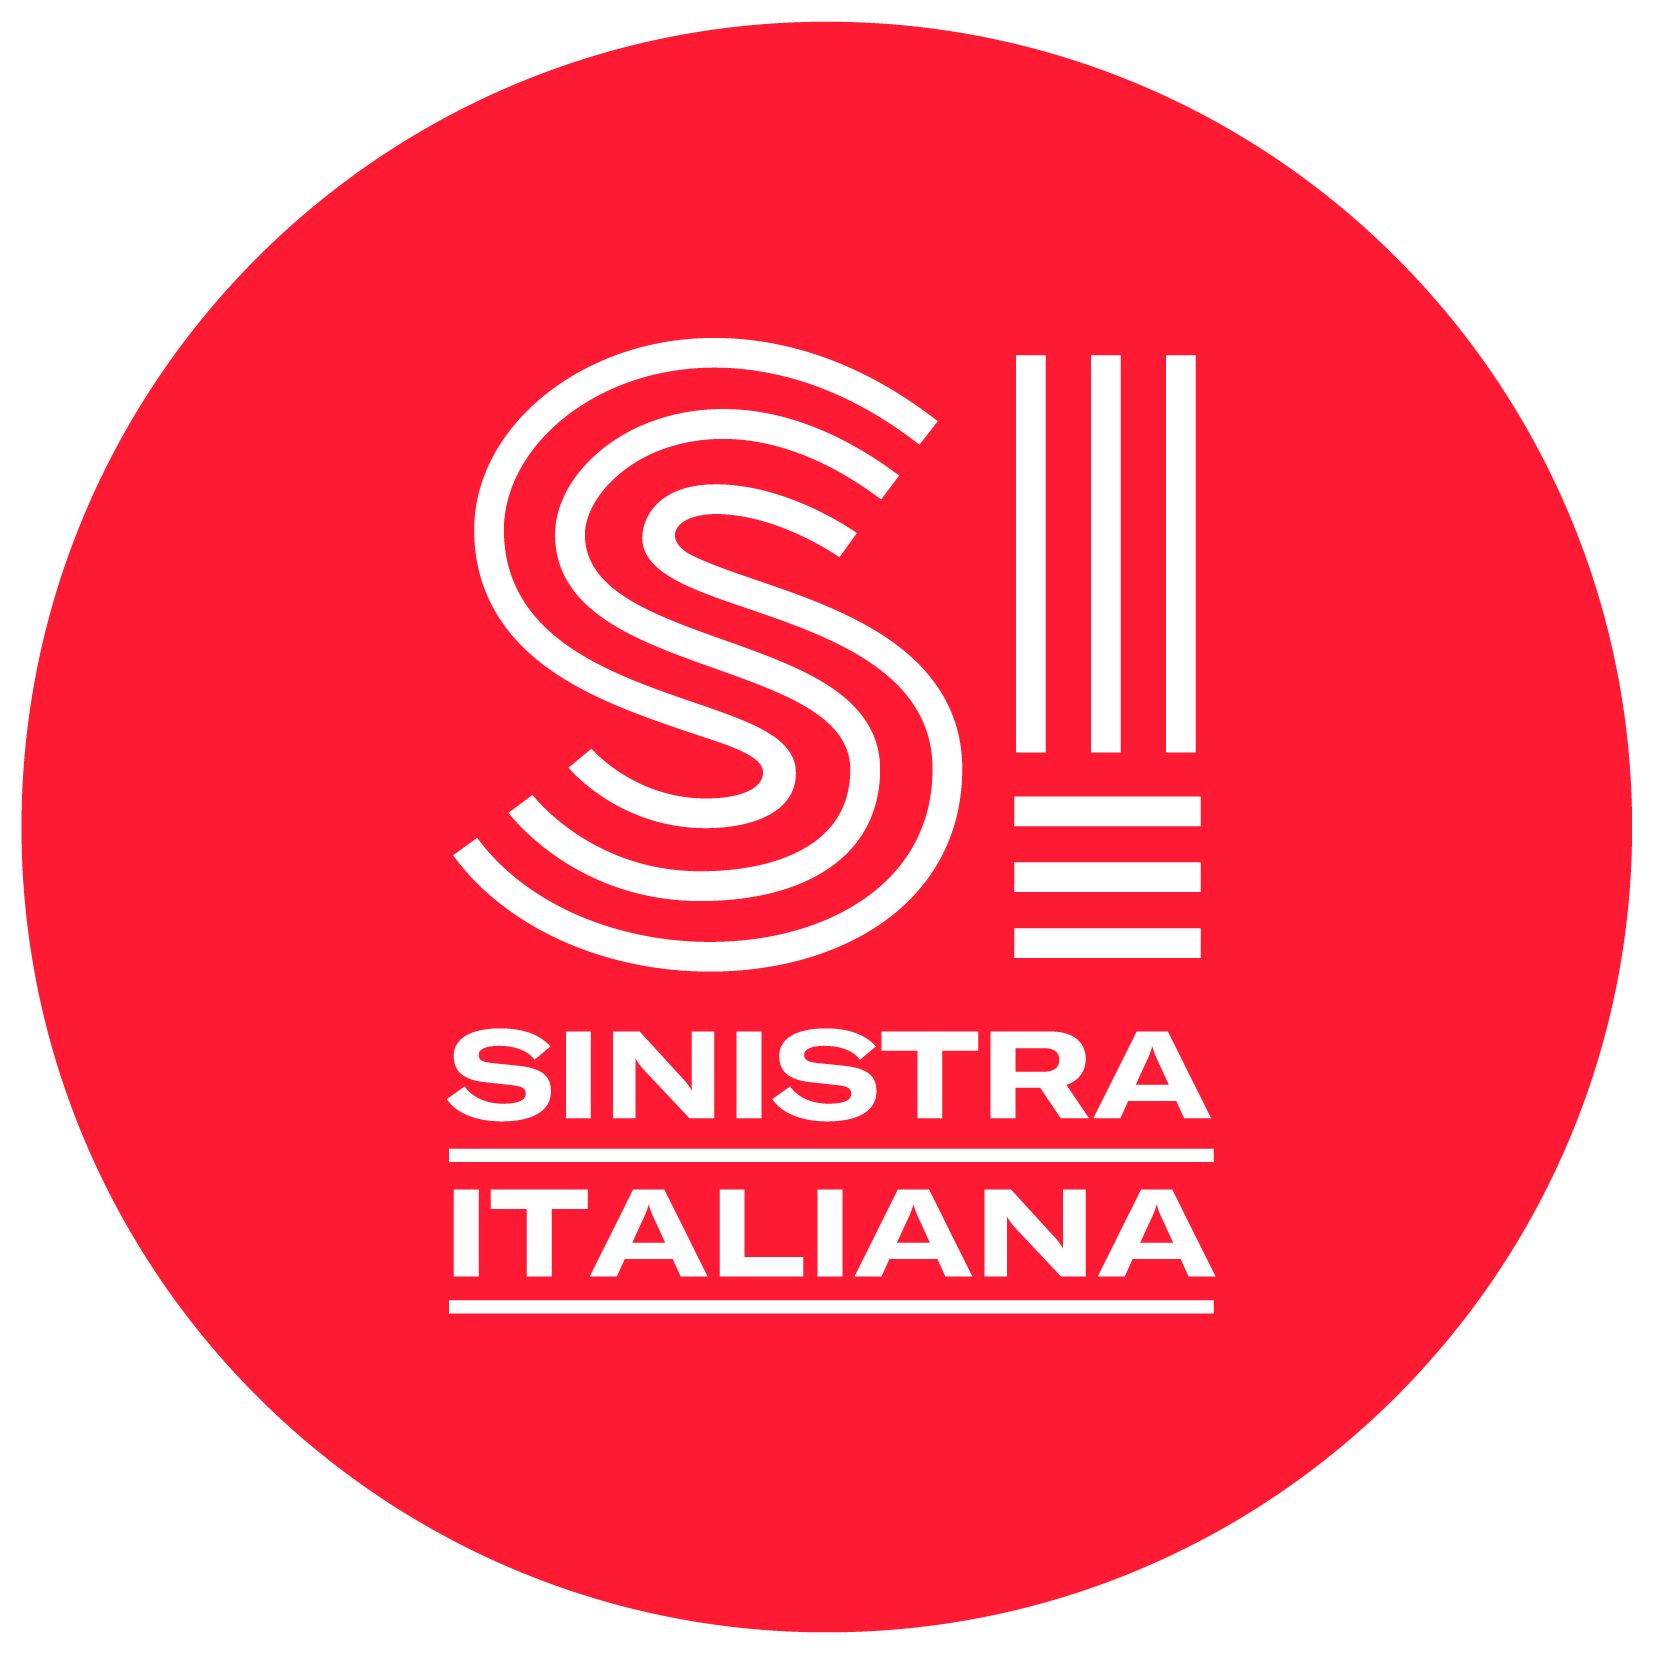 Sinistra Italiana simbolo e grafiche standard - Sinistra Italiana